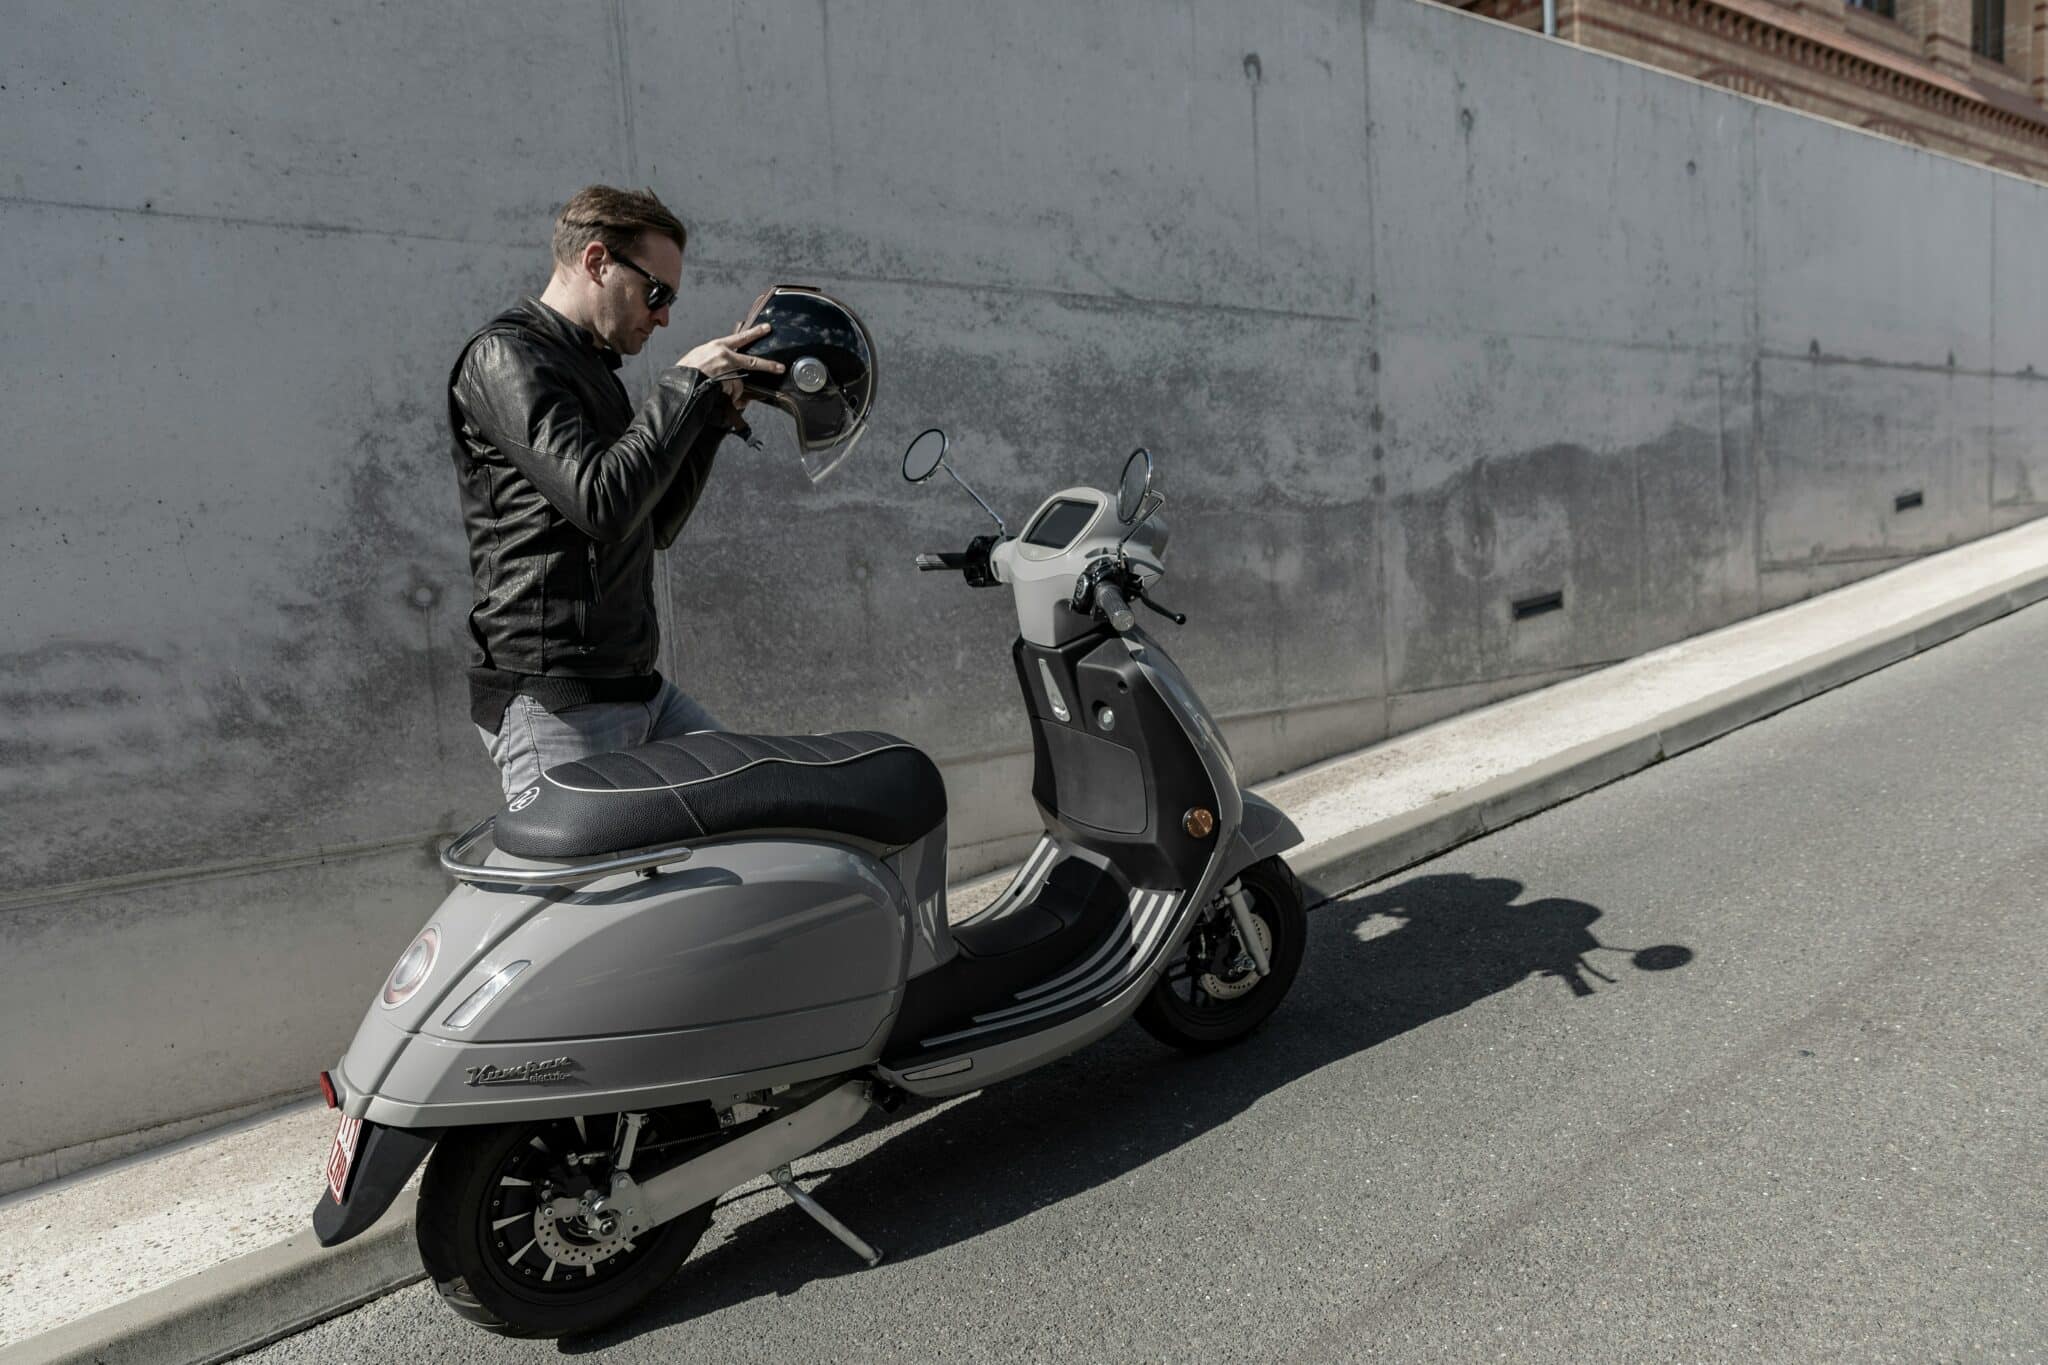 découvrez une sélection impressionnante de motos électriques innovantes, économiques et écologiques sur notre boutique en ligne. trouvez la moto électrique de vos rêves dès maintenant !